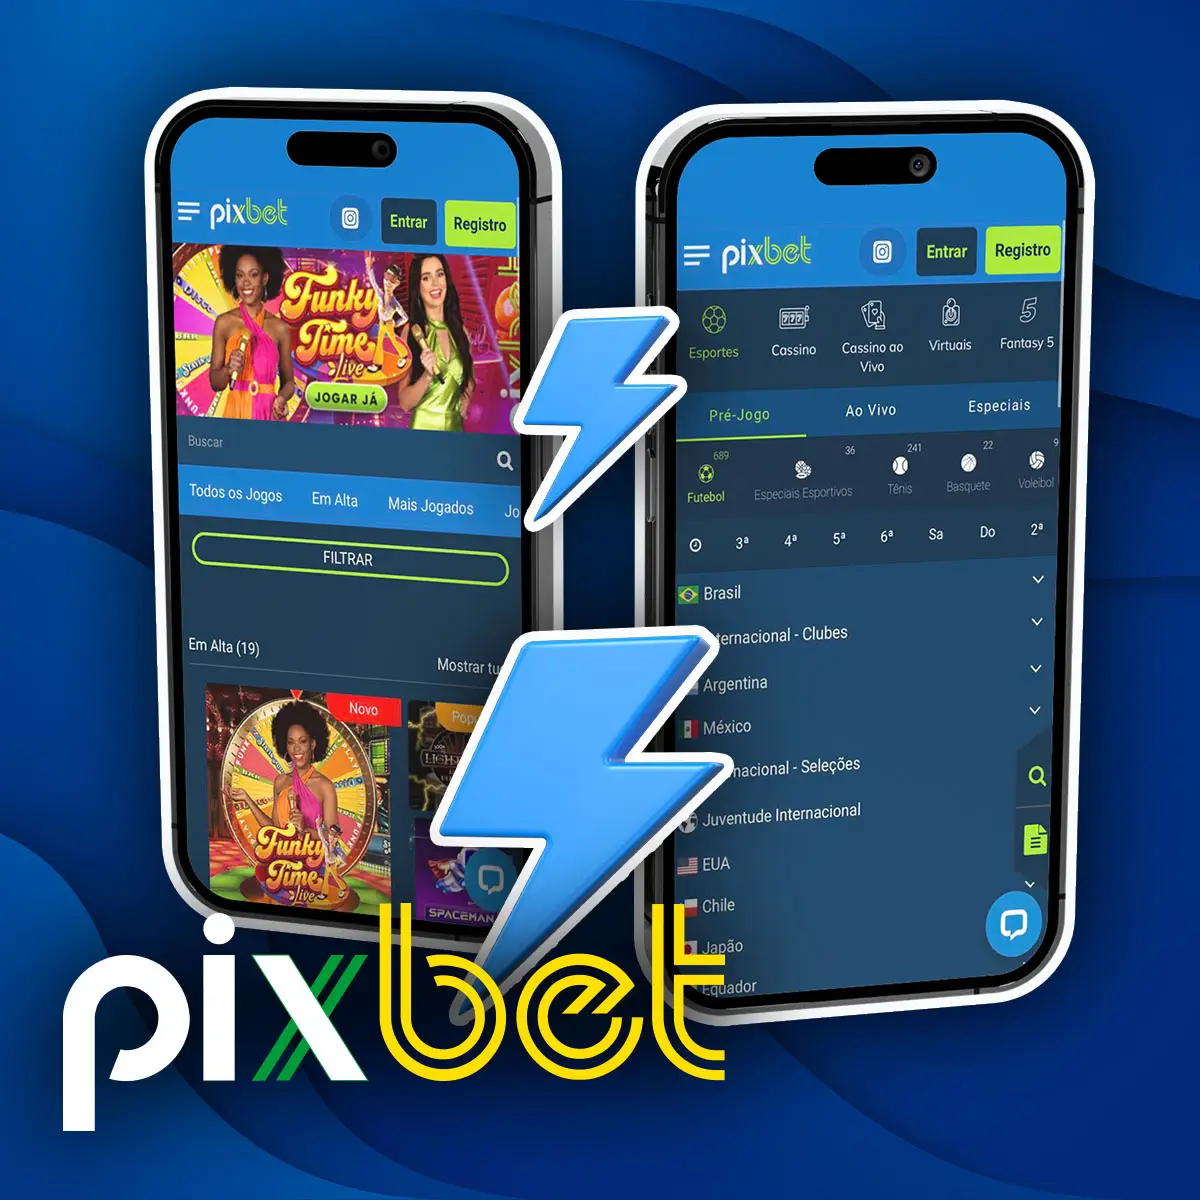 Diferenças entre a aplicação móvel e a versão móvel da casa de apostas Pixbet no Brasil